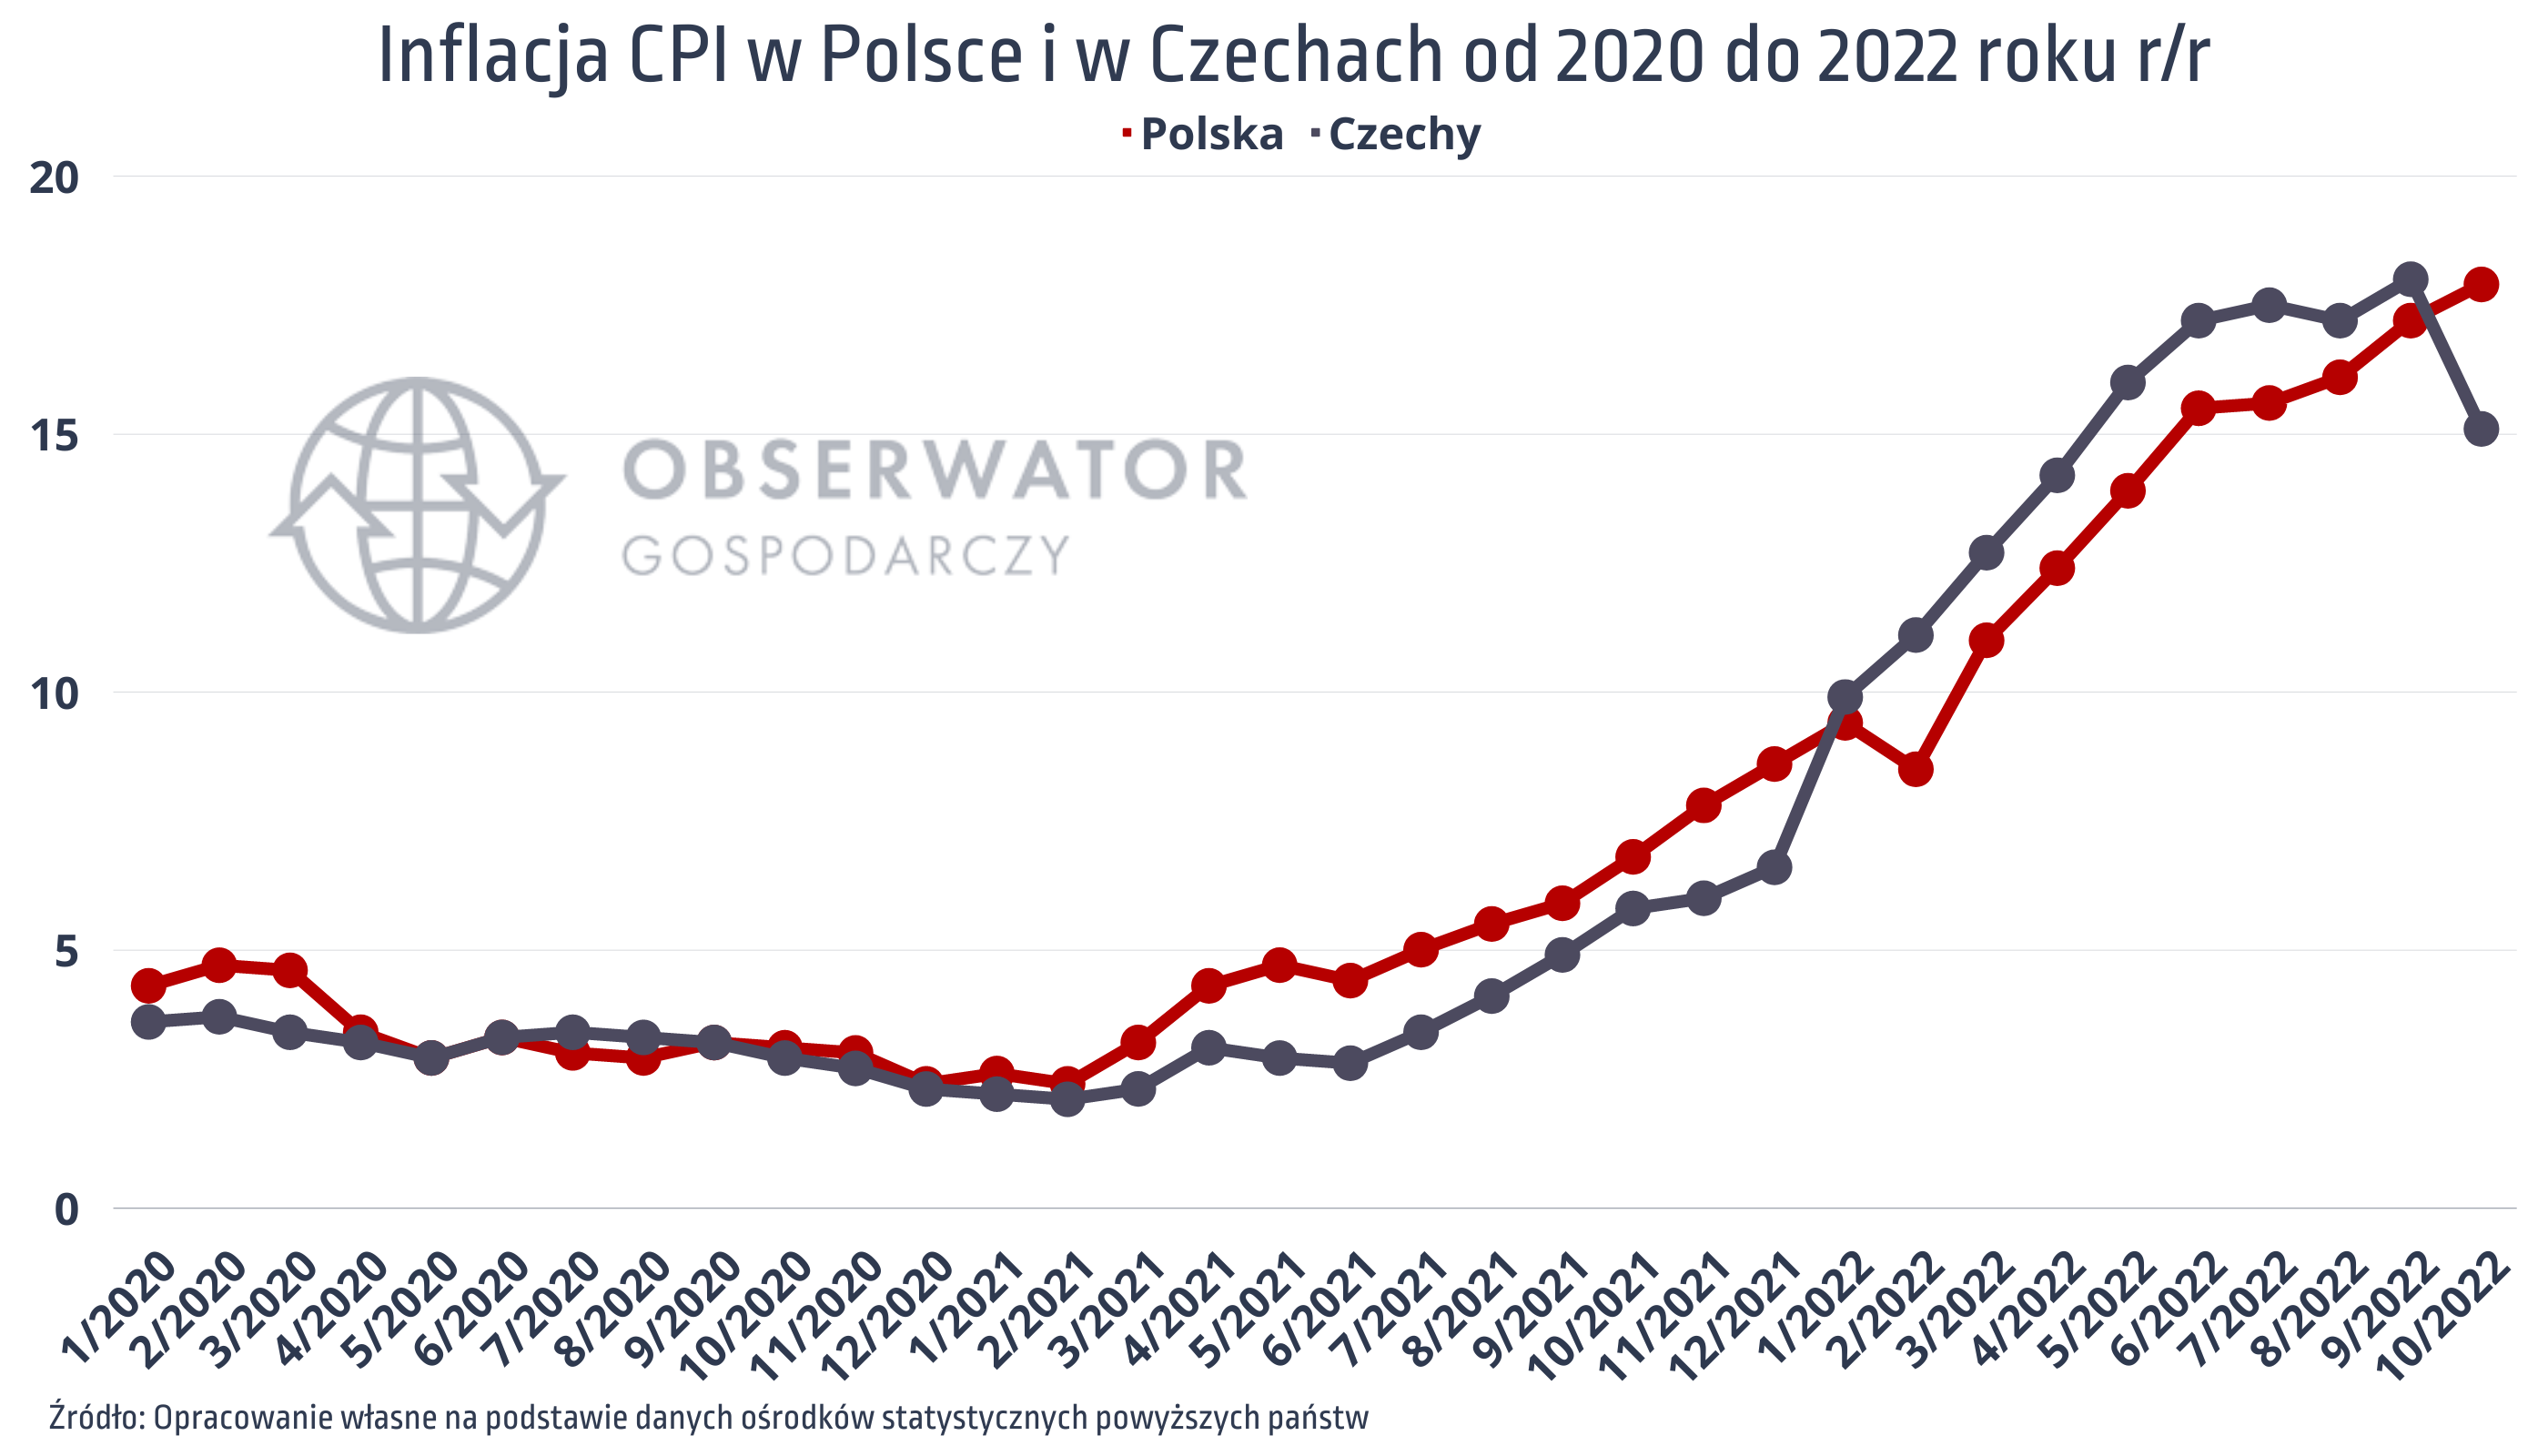 Inflacja CPI w Polsce i Czechach od 2020 do 2022